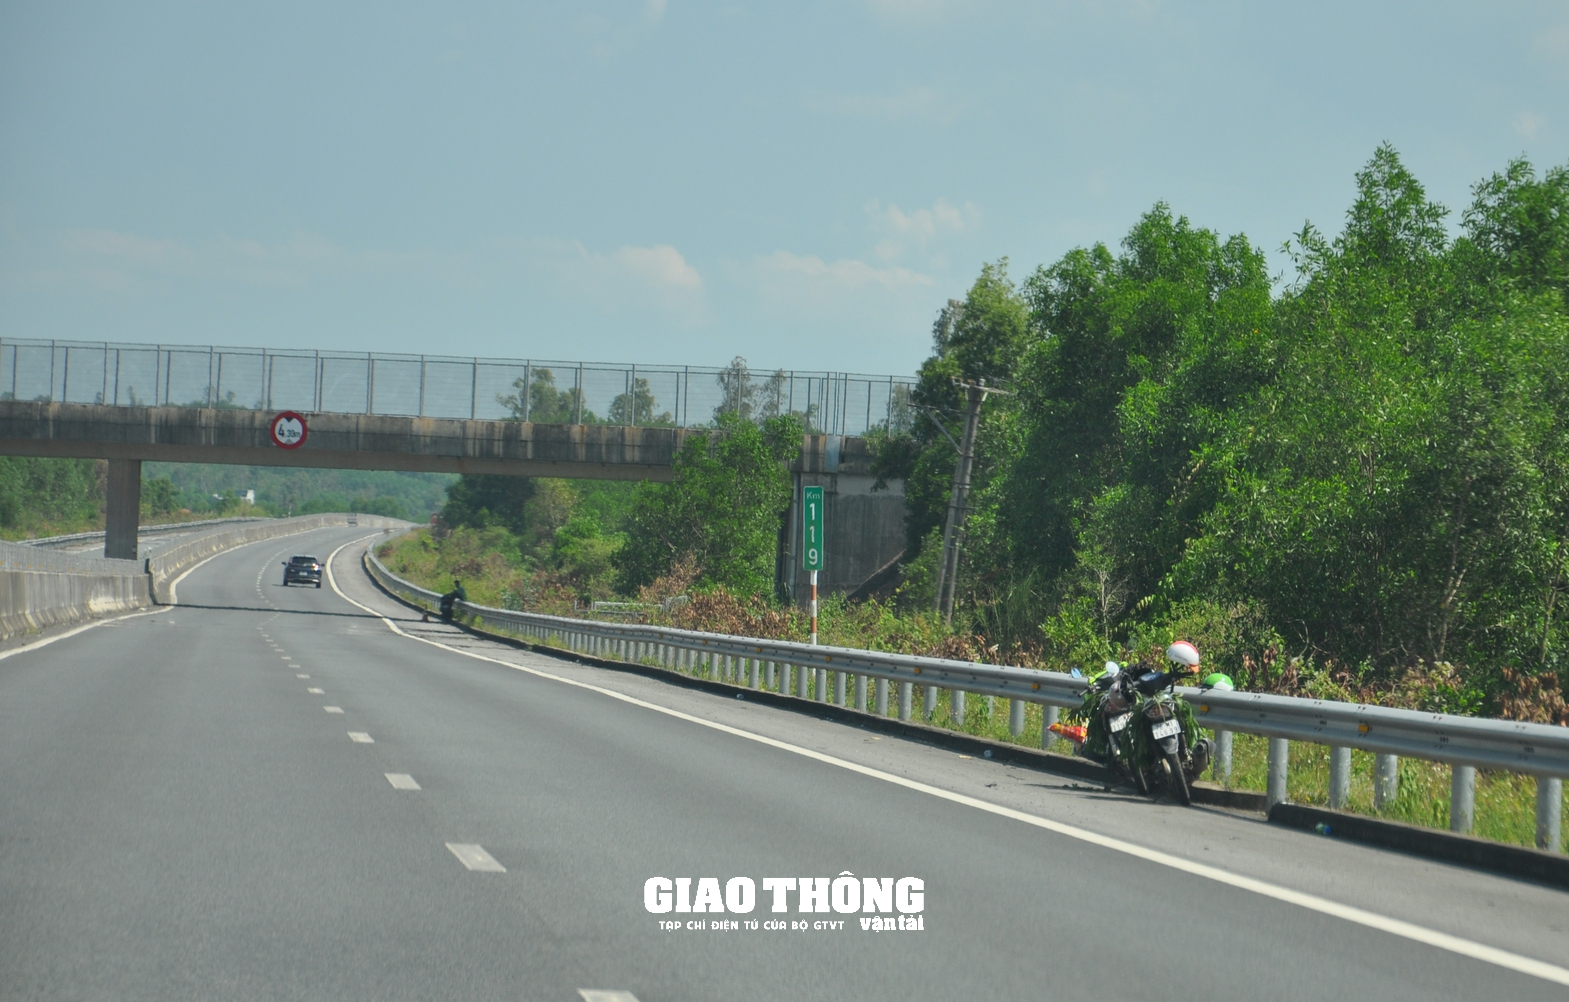 Khắc phục hư hỏng, đảm bảo ATGT tuyến cao tốc Đà Nẵng-Quảng Ngãi - Ảnh 1.